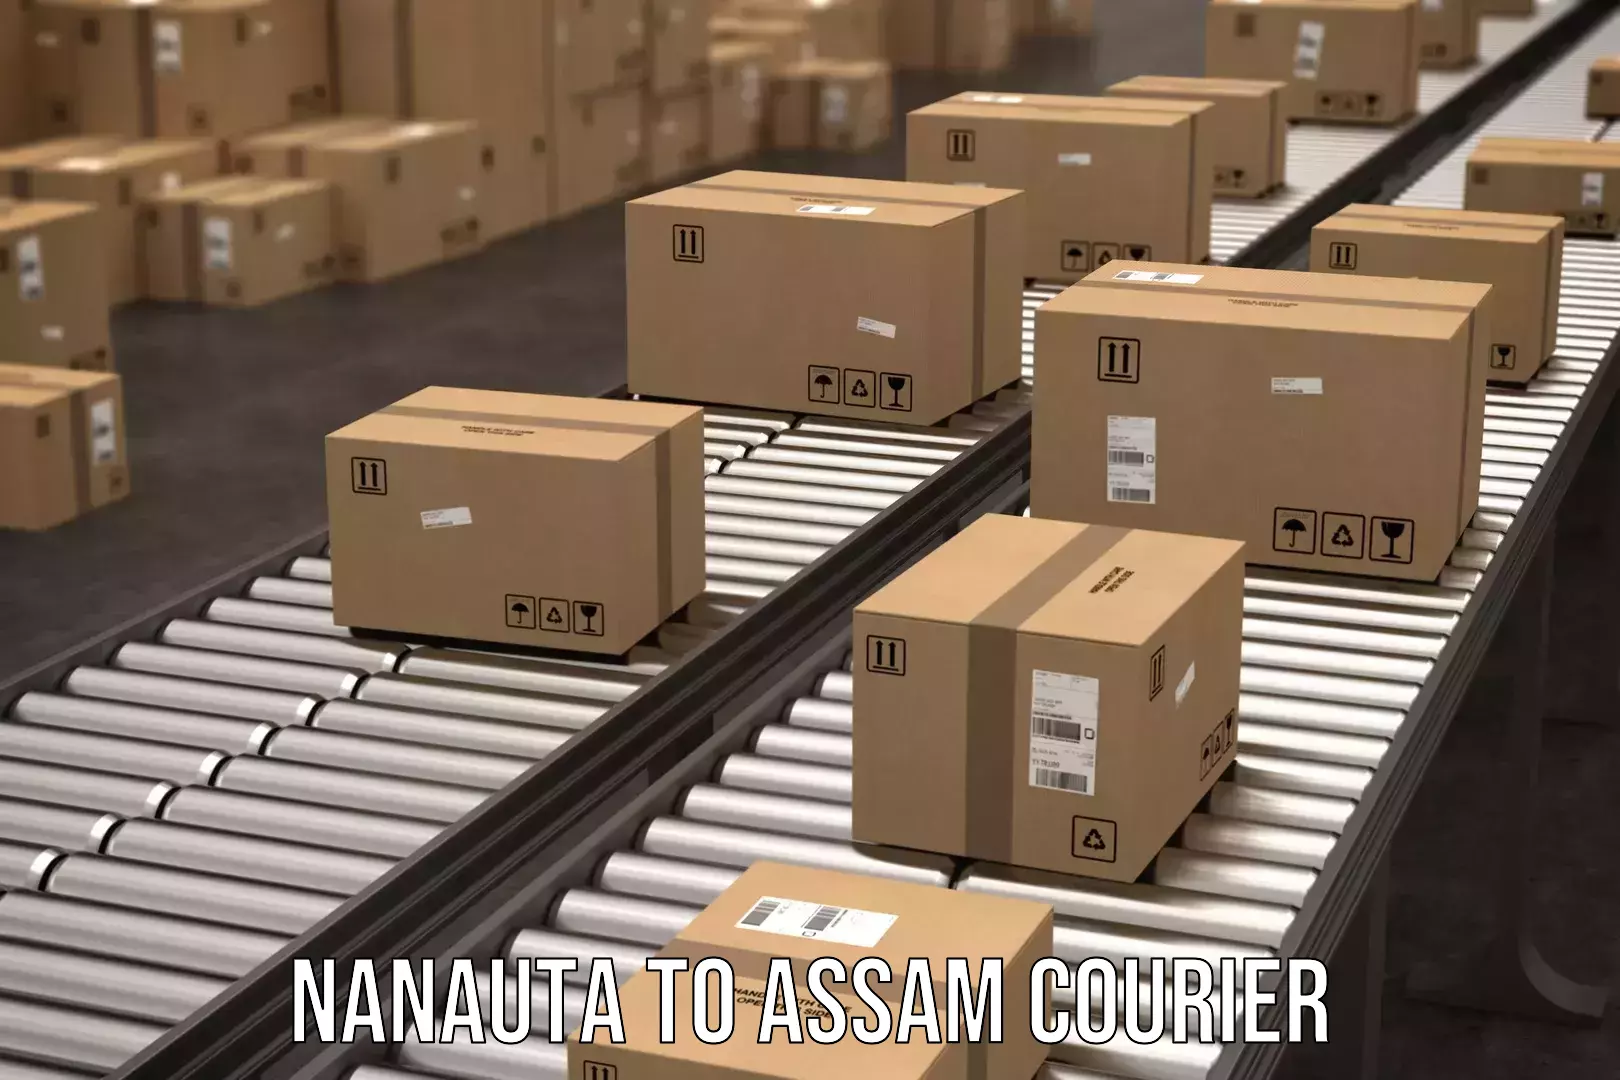 Automated shipping Nanauta to Assam